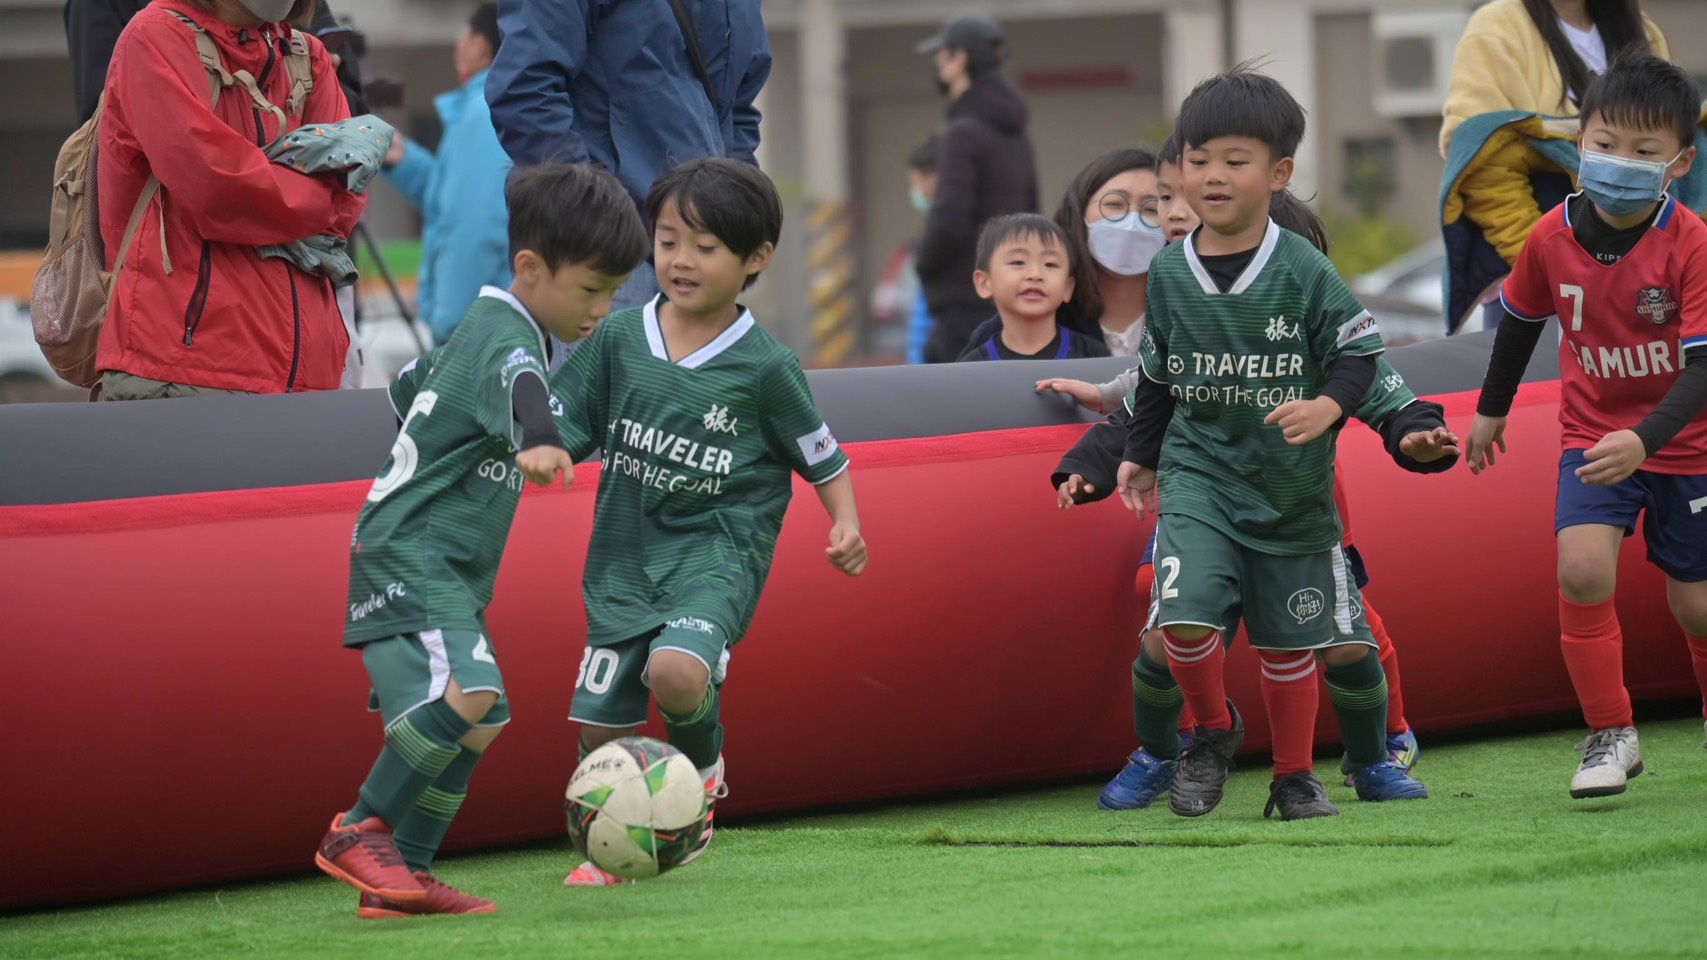 中市賀歲盃幼兒足球賽開踢 吸引逾2000名幼童展活力